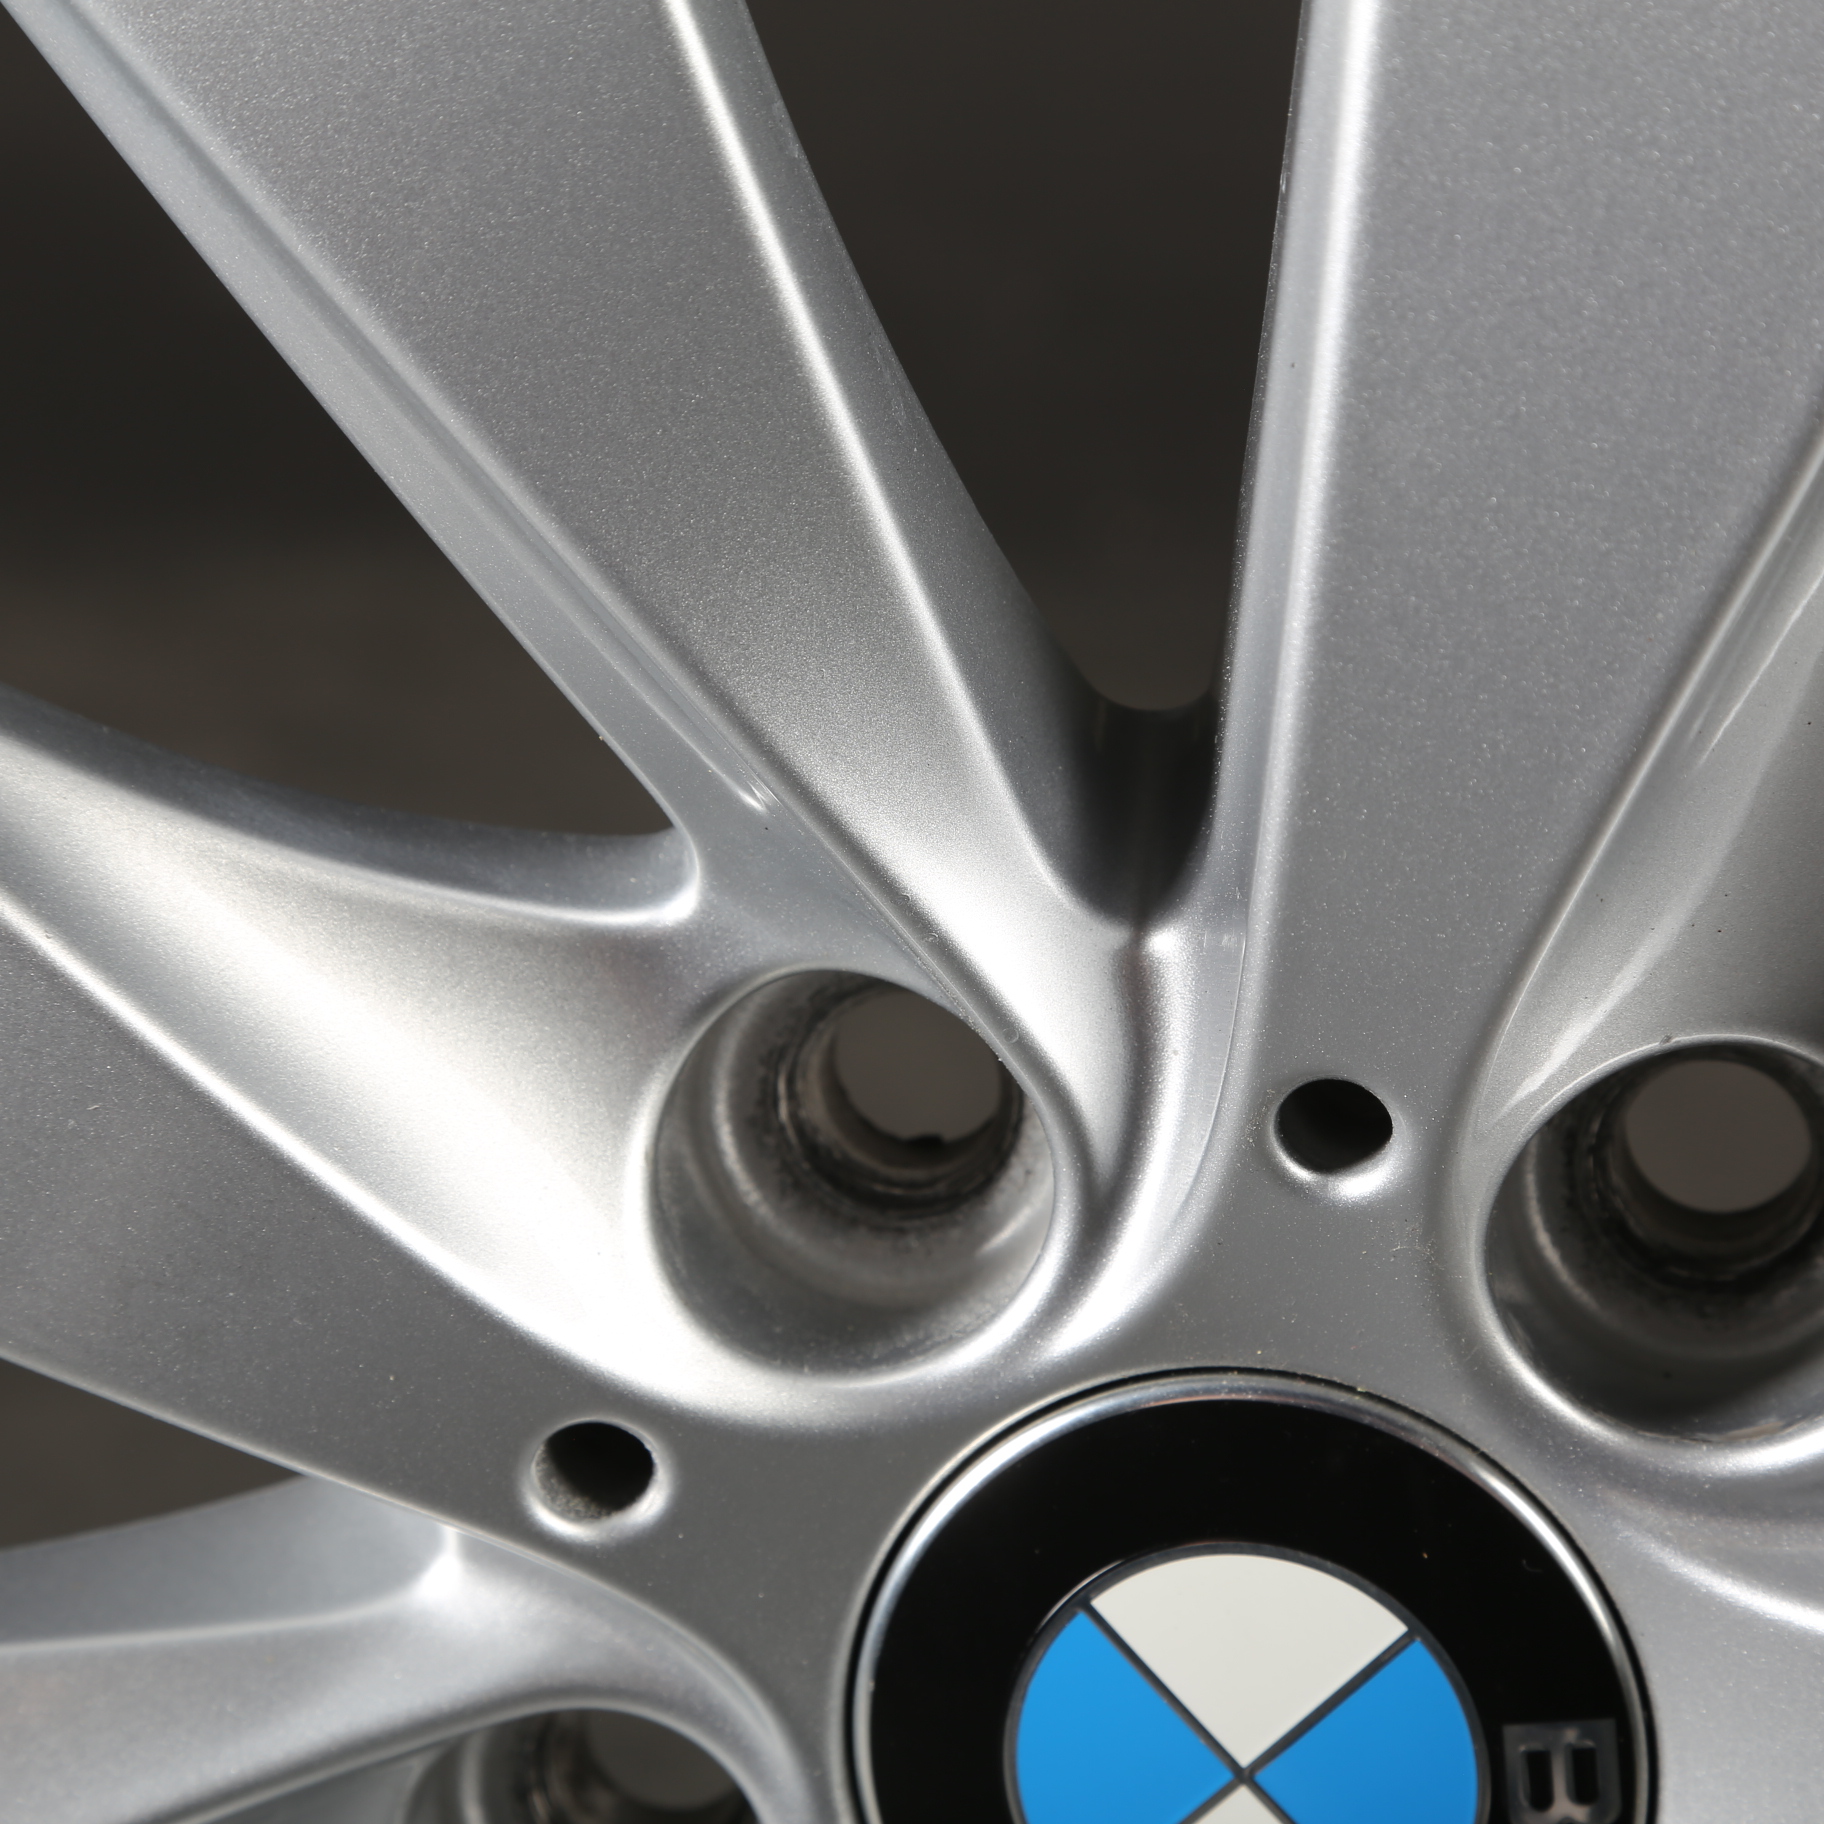 17 pouces roues d'hiver d'origine BMW Série 3 F30 F31 Série 4 F32 F33 F36 413 Jantes en aluminium